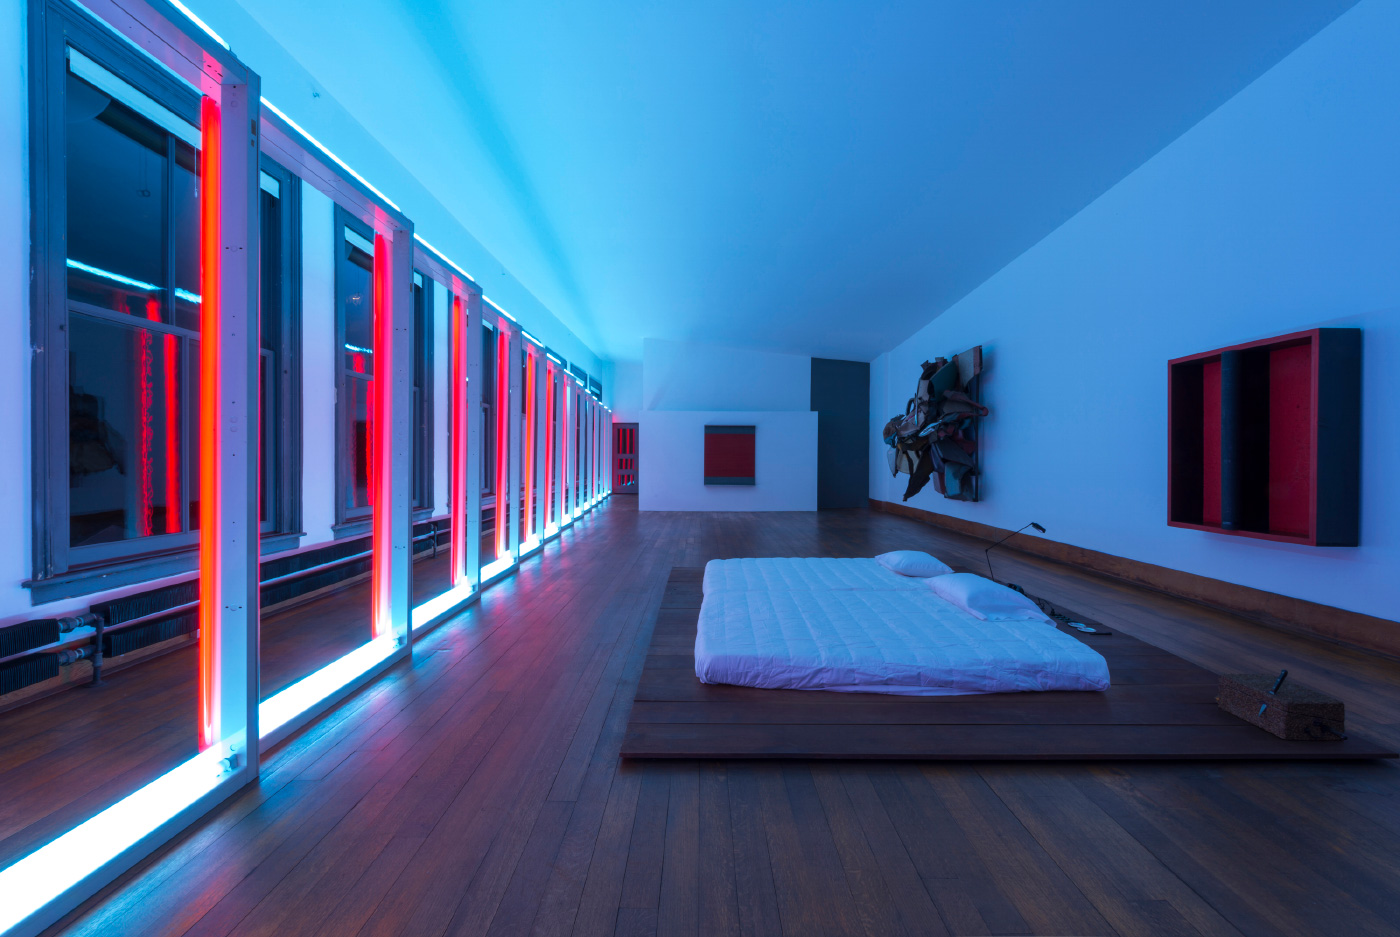 唐纳德·贾德基金会(Donald Judd Foundation)位于纽约的住宅内部，是一间蓝色和粉色灯光的卧室